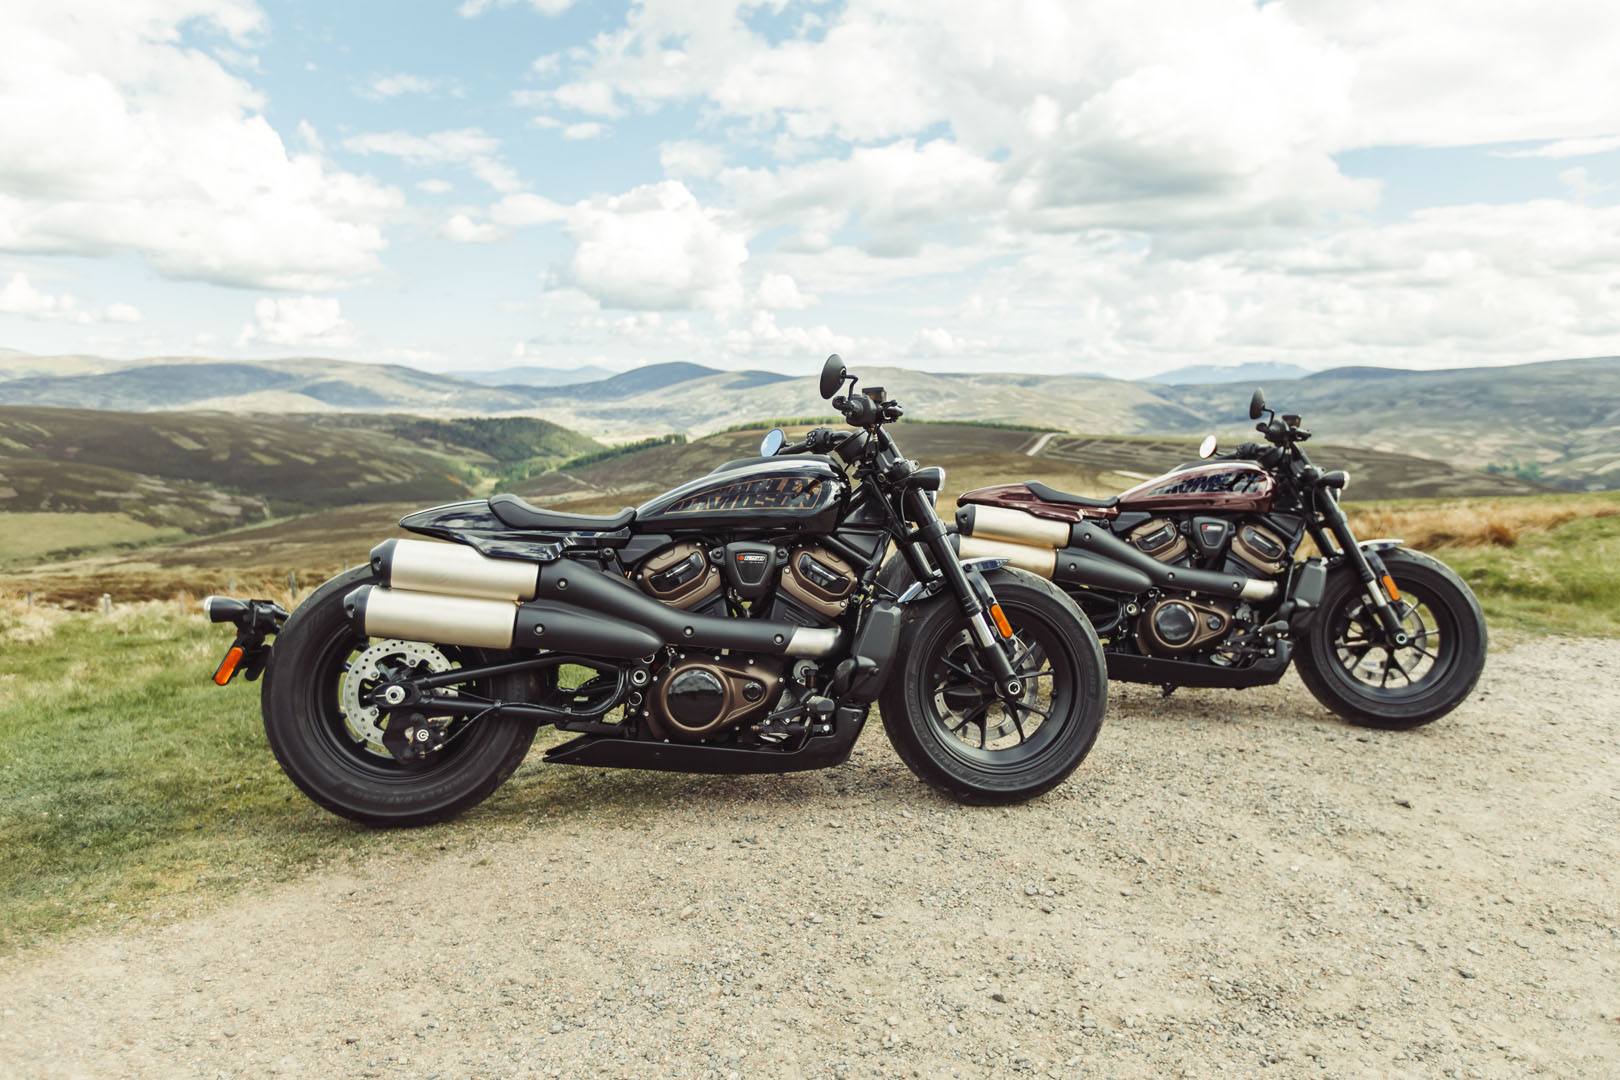 New 2021 Harley Davidson Sportster S Motorcycles In Pasadena Tx 311929 Vivid Black